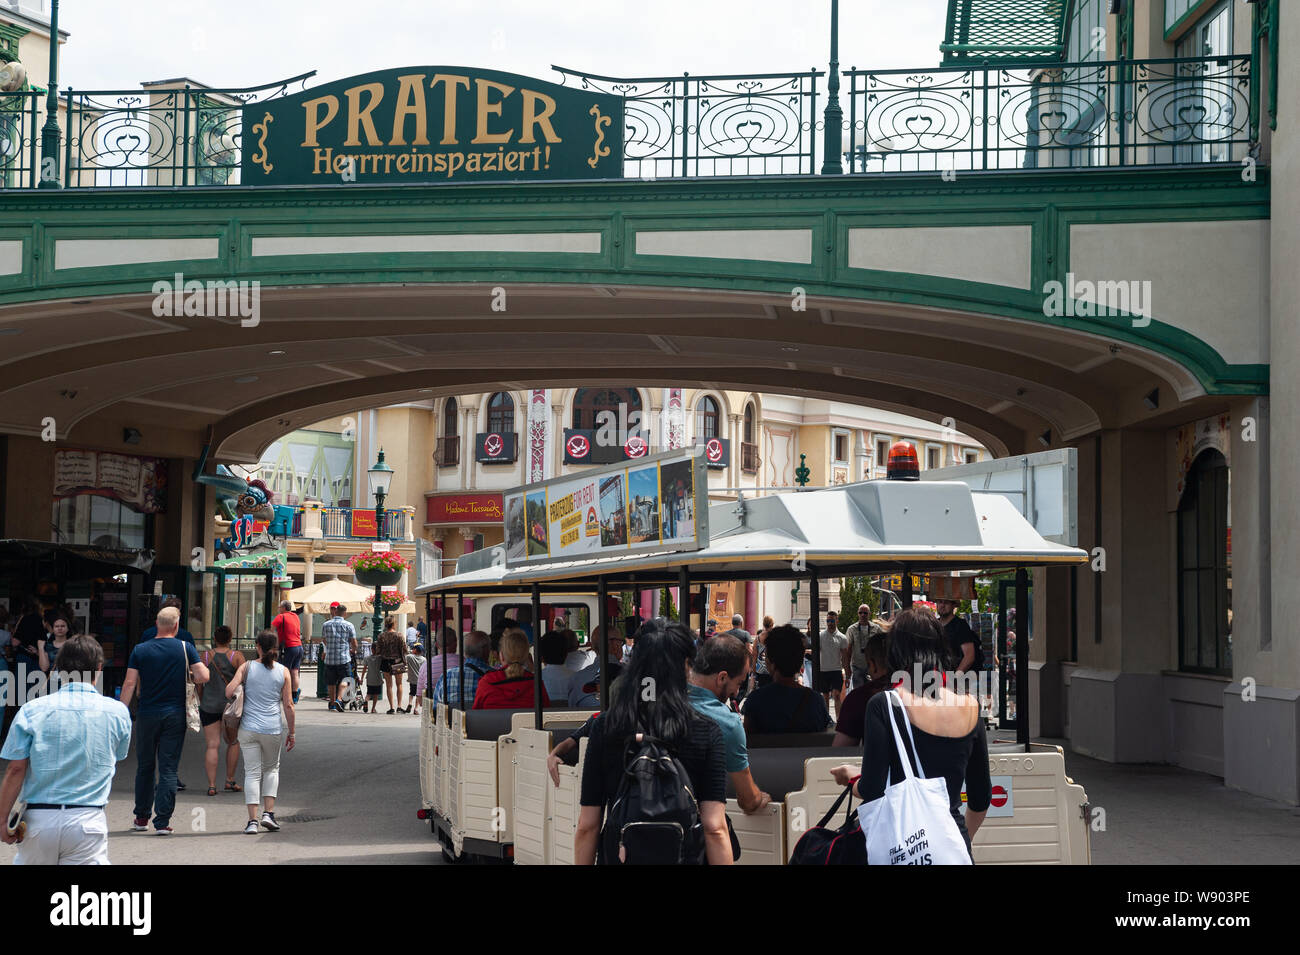 16.06.2019, Vienne, Autriche, Europe - de visiteurs franchissent l'entrée au parc d'Wiener Prater. Banque D'Images